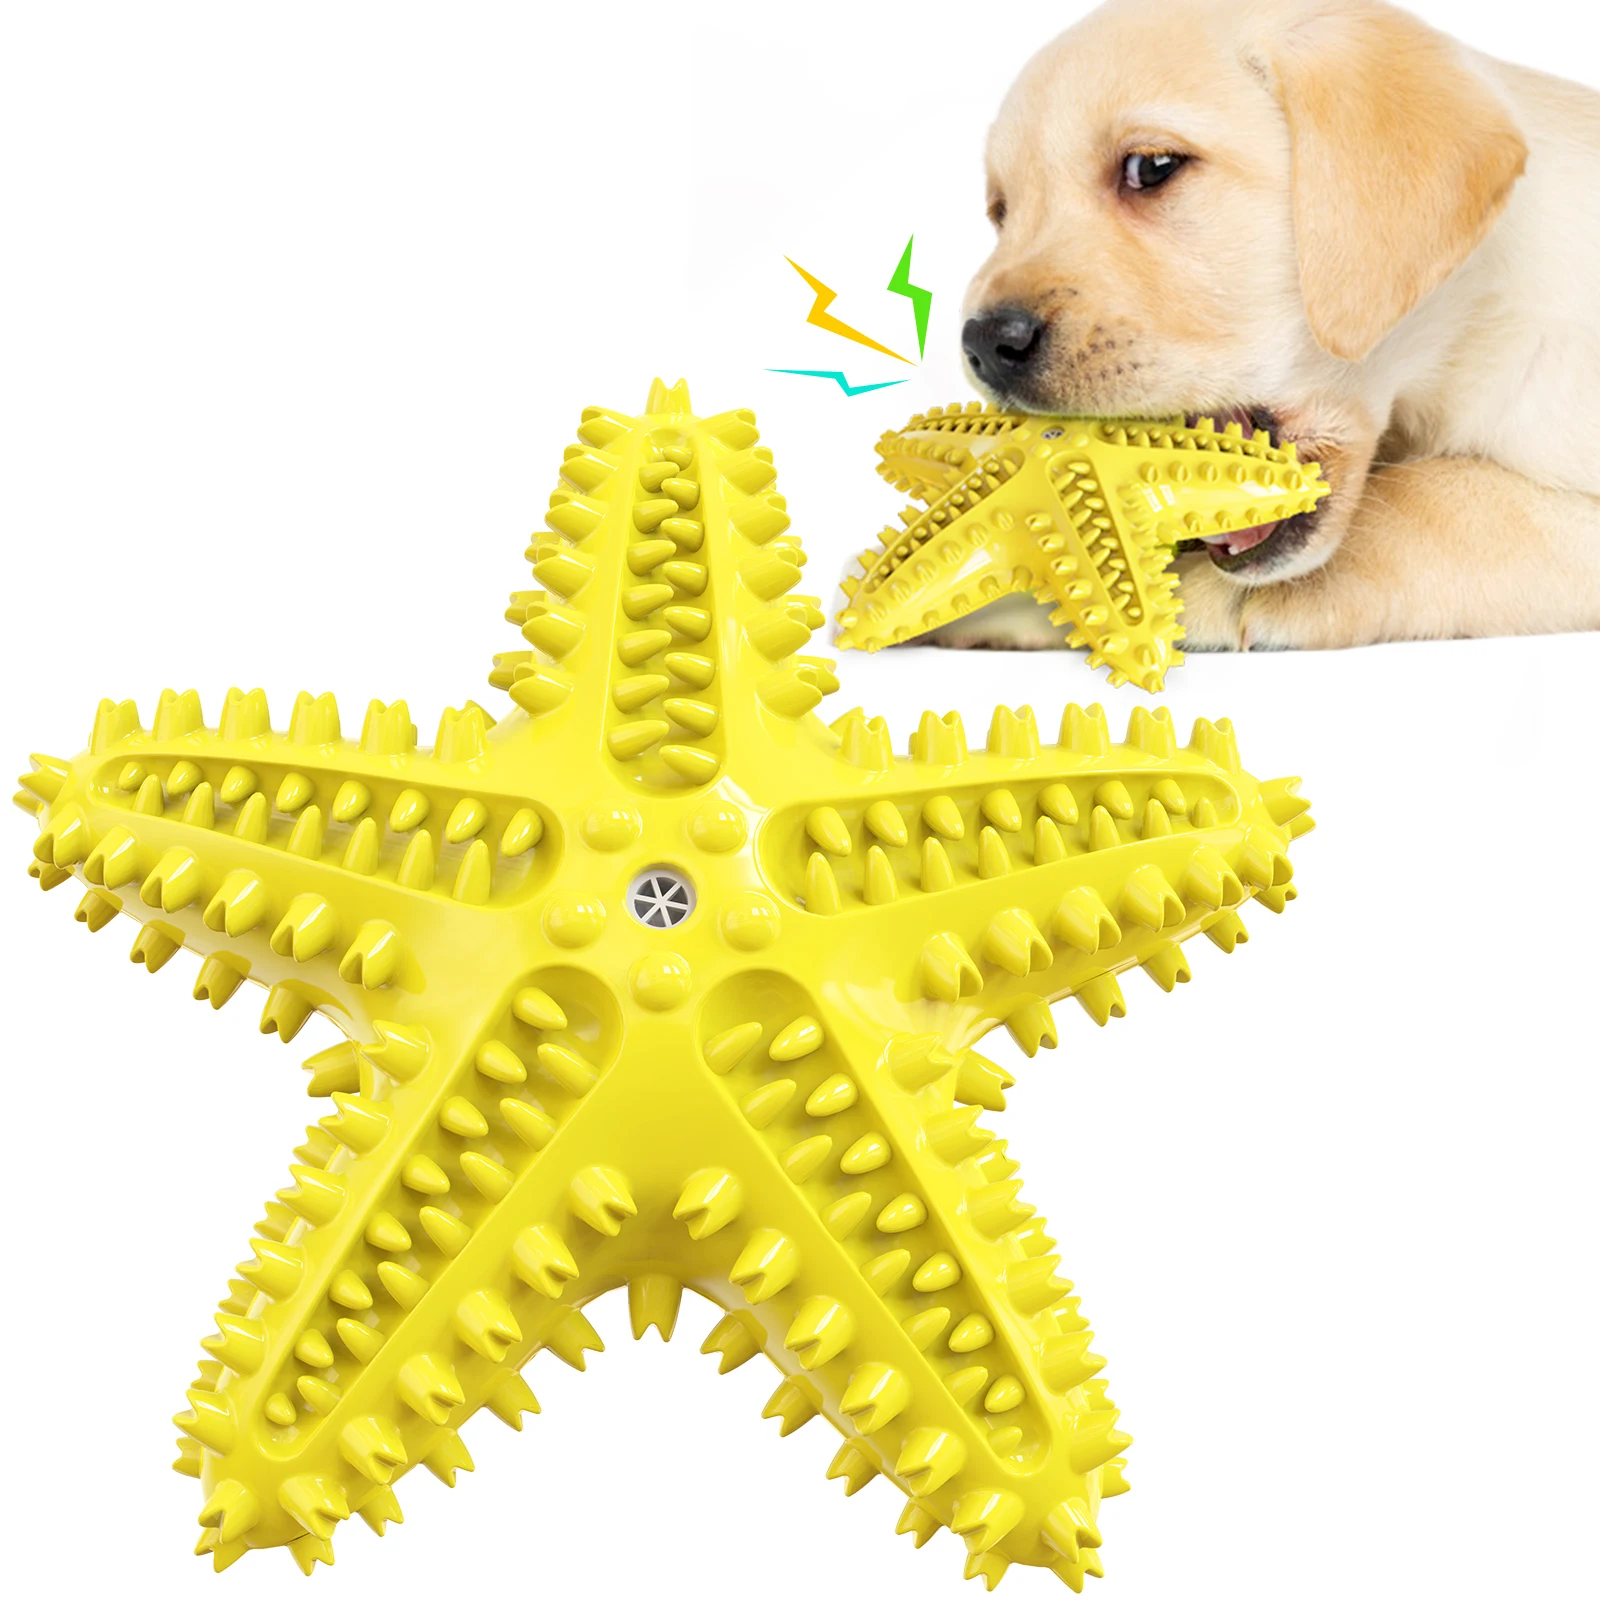 

Собака игрушка для домашней собаки молярная игрушка из эластичной резины жевать игрушка с пищалкой сопротивления к укус Pet чистки зубов соб...